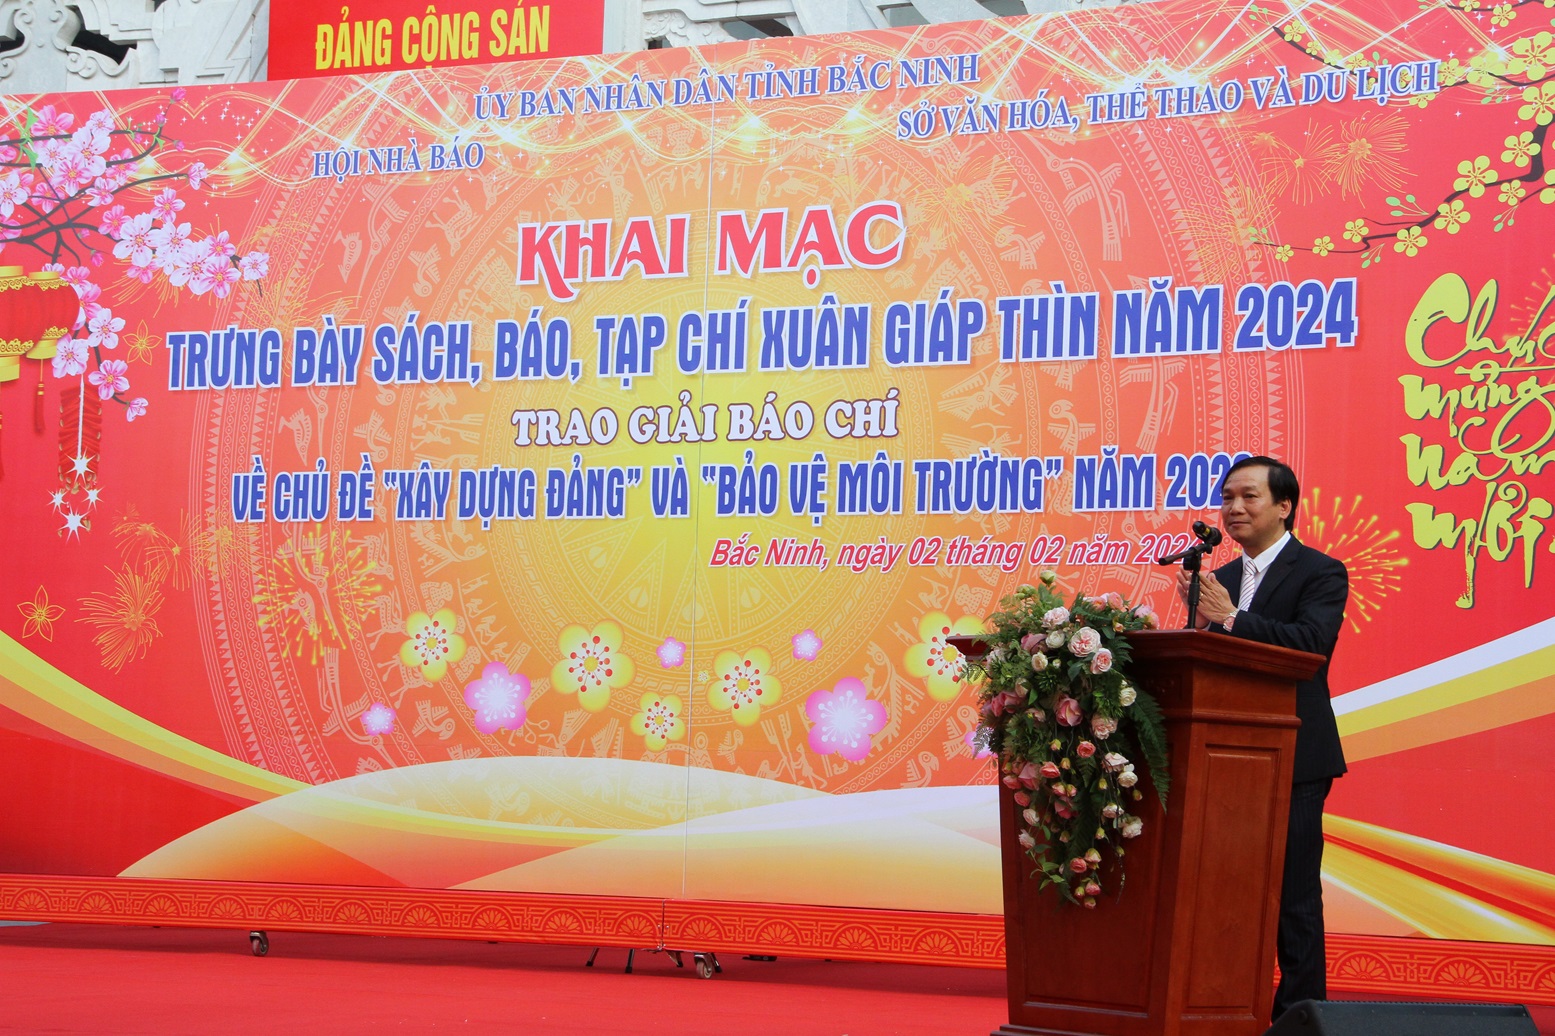 Ông Nguyễn Tiến Vụ, Tổng Biên tập Báo Bắc Ninh, Chủ tịch Hội Nhà báo tỉnh Bắc Ninh phát biểu tại Lễ khai mạc